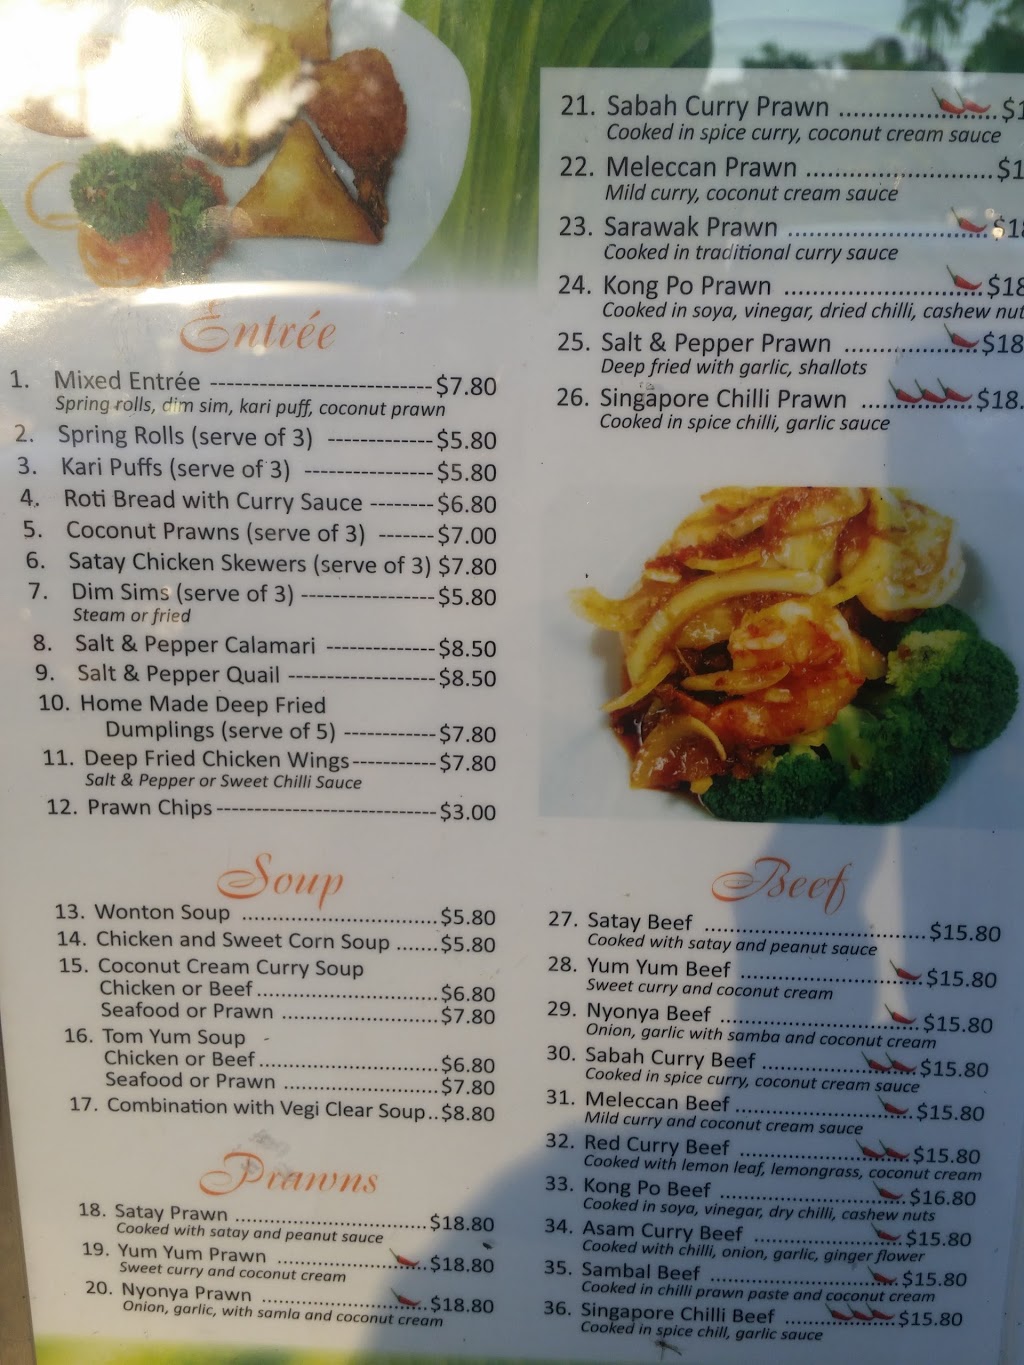 Green Leaf Malay | restaurant | Green Leaf Malay, metro market, Shop46/33 Hollywell Rd, Biggera Waters QLD 4216, Australia | 0756790663 OR +61 7 5679 0663